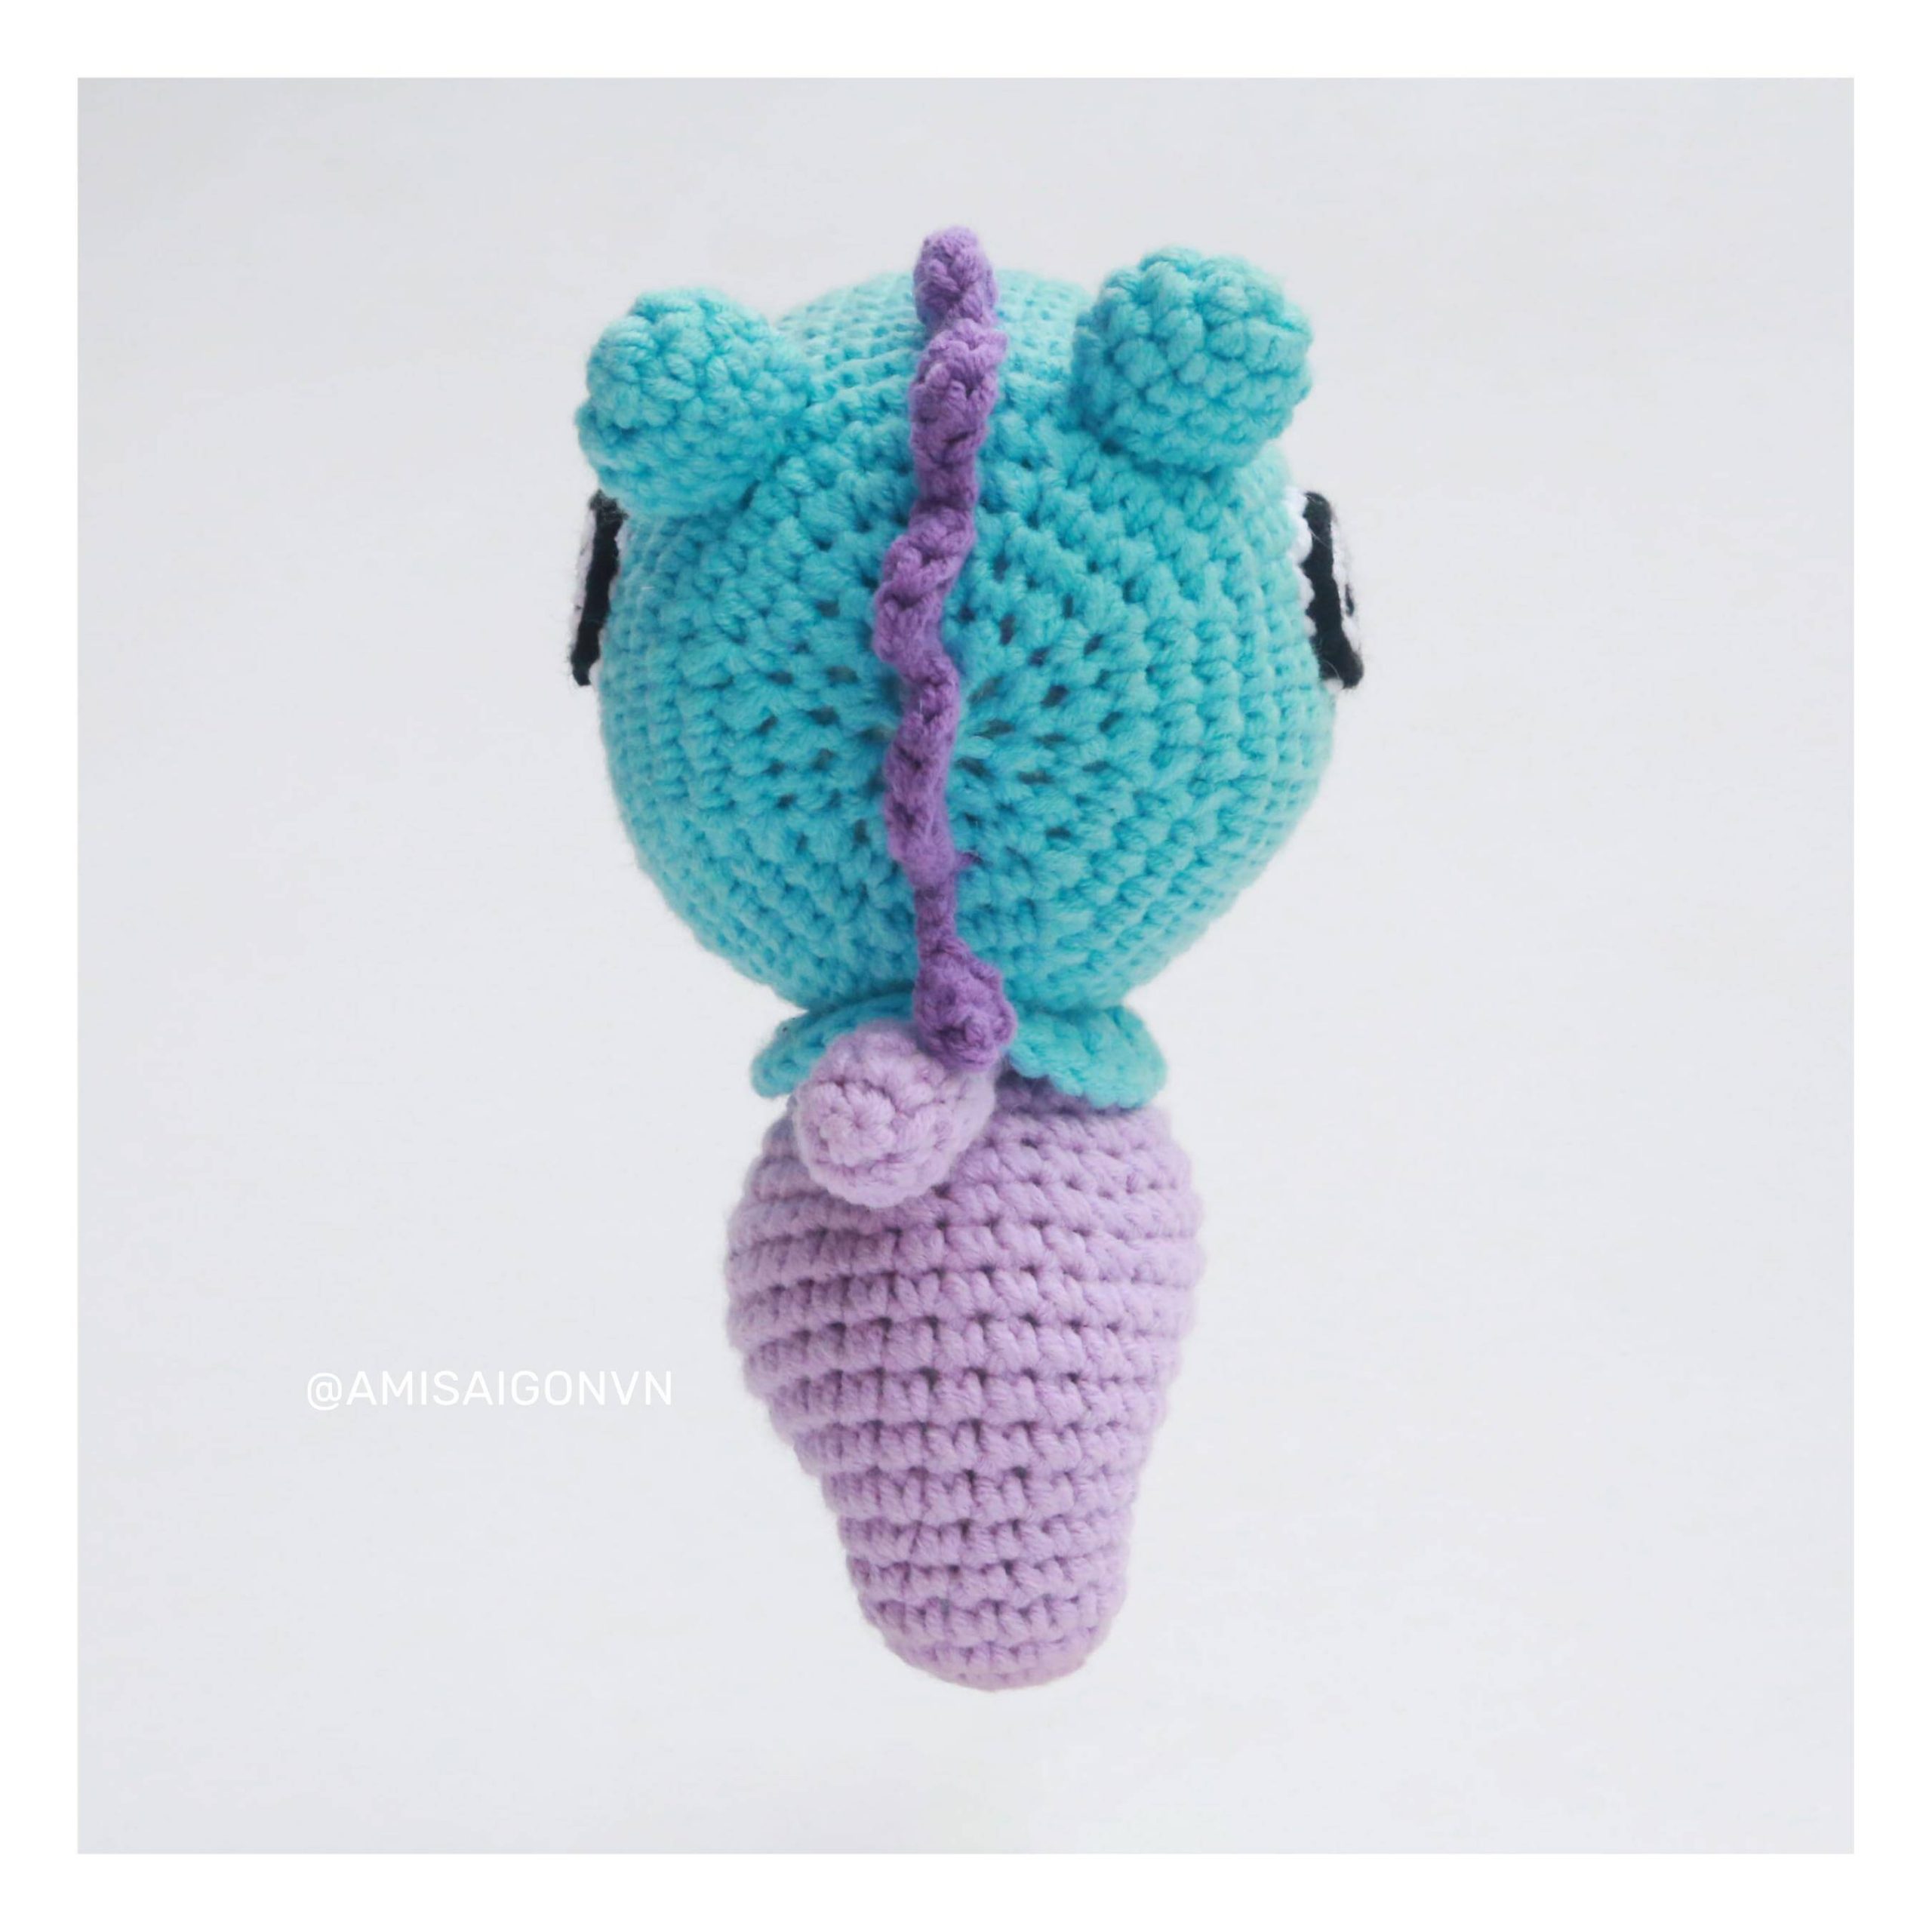 mang-amigurumi-crochet-pattern-amisaigon-bts-bt21 (6)